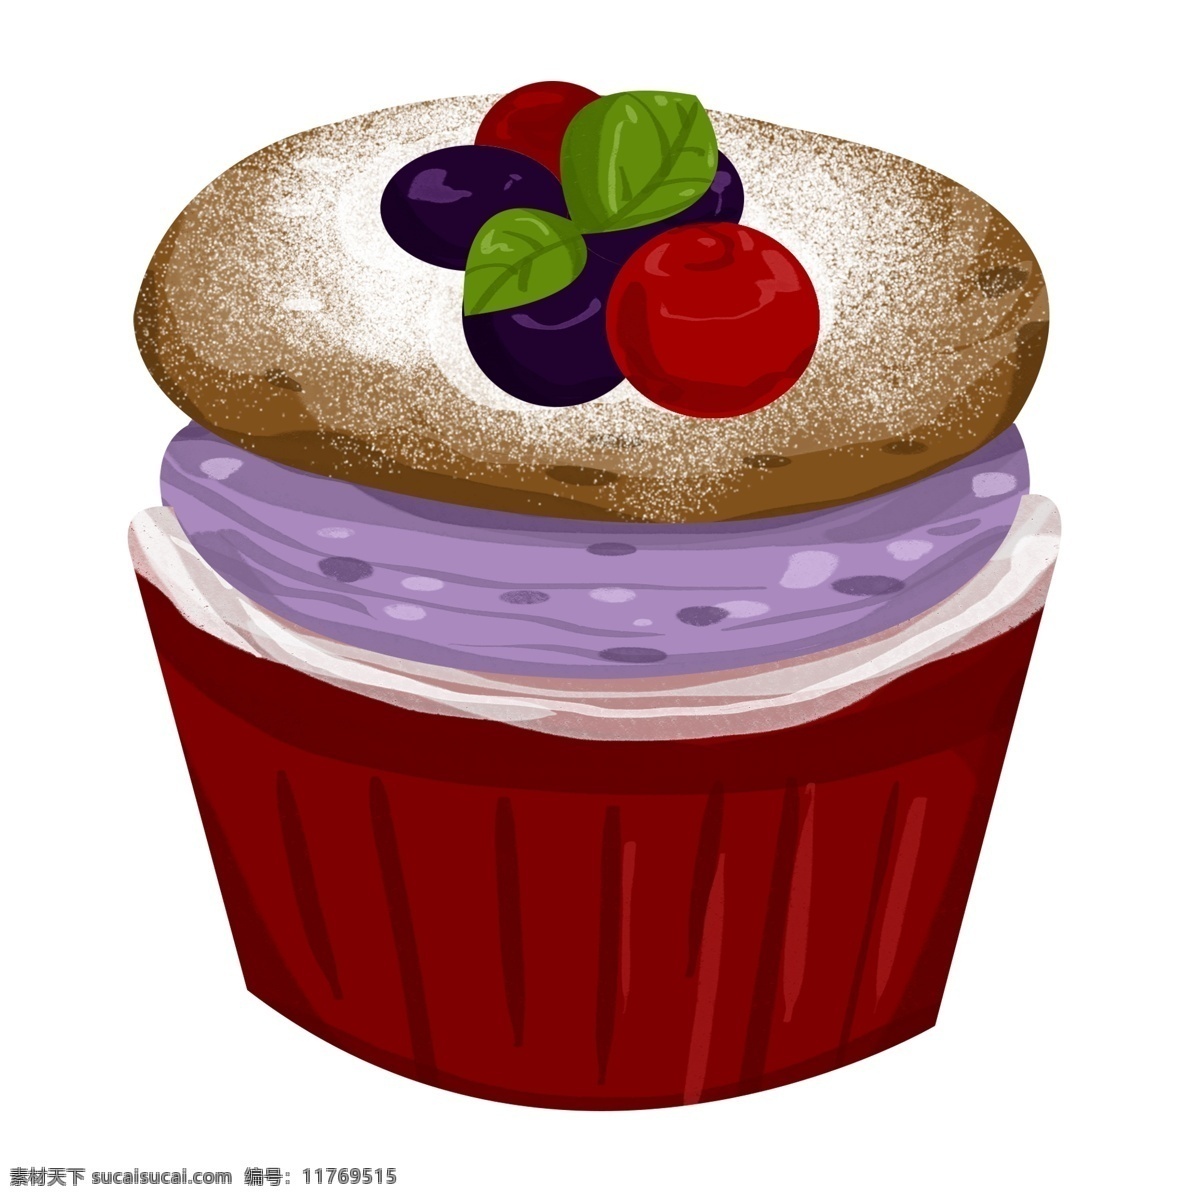 手绘 葡萄 舒 芙 蕾 插画 嫩葡萄 蛋挞 面包 红色盒子 一盒舒芙蕾 手绘舒芙蕾 蛋奶酥 食物